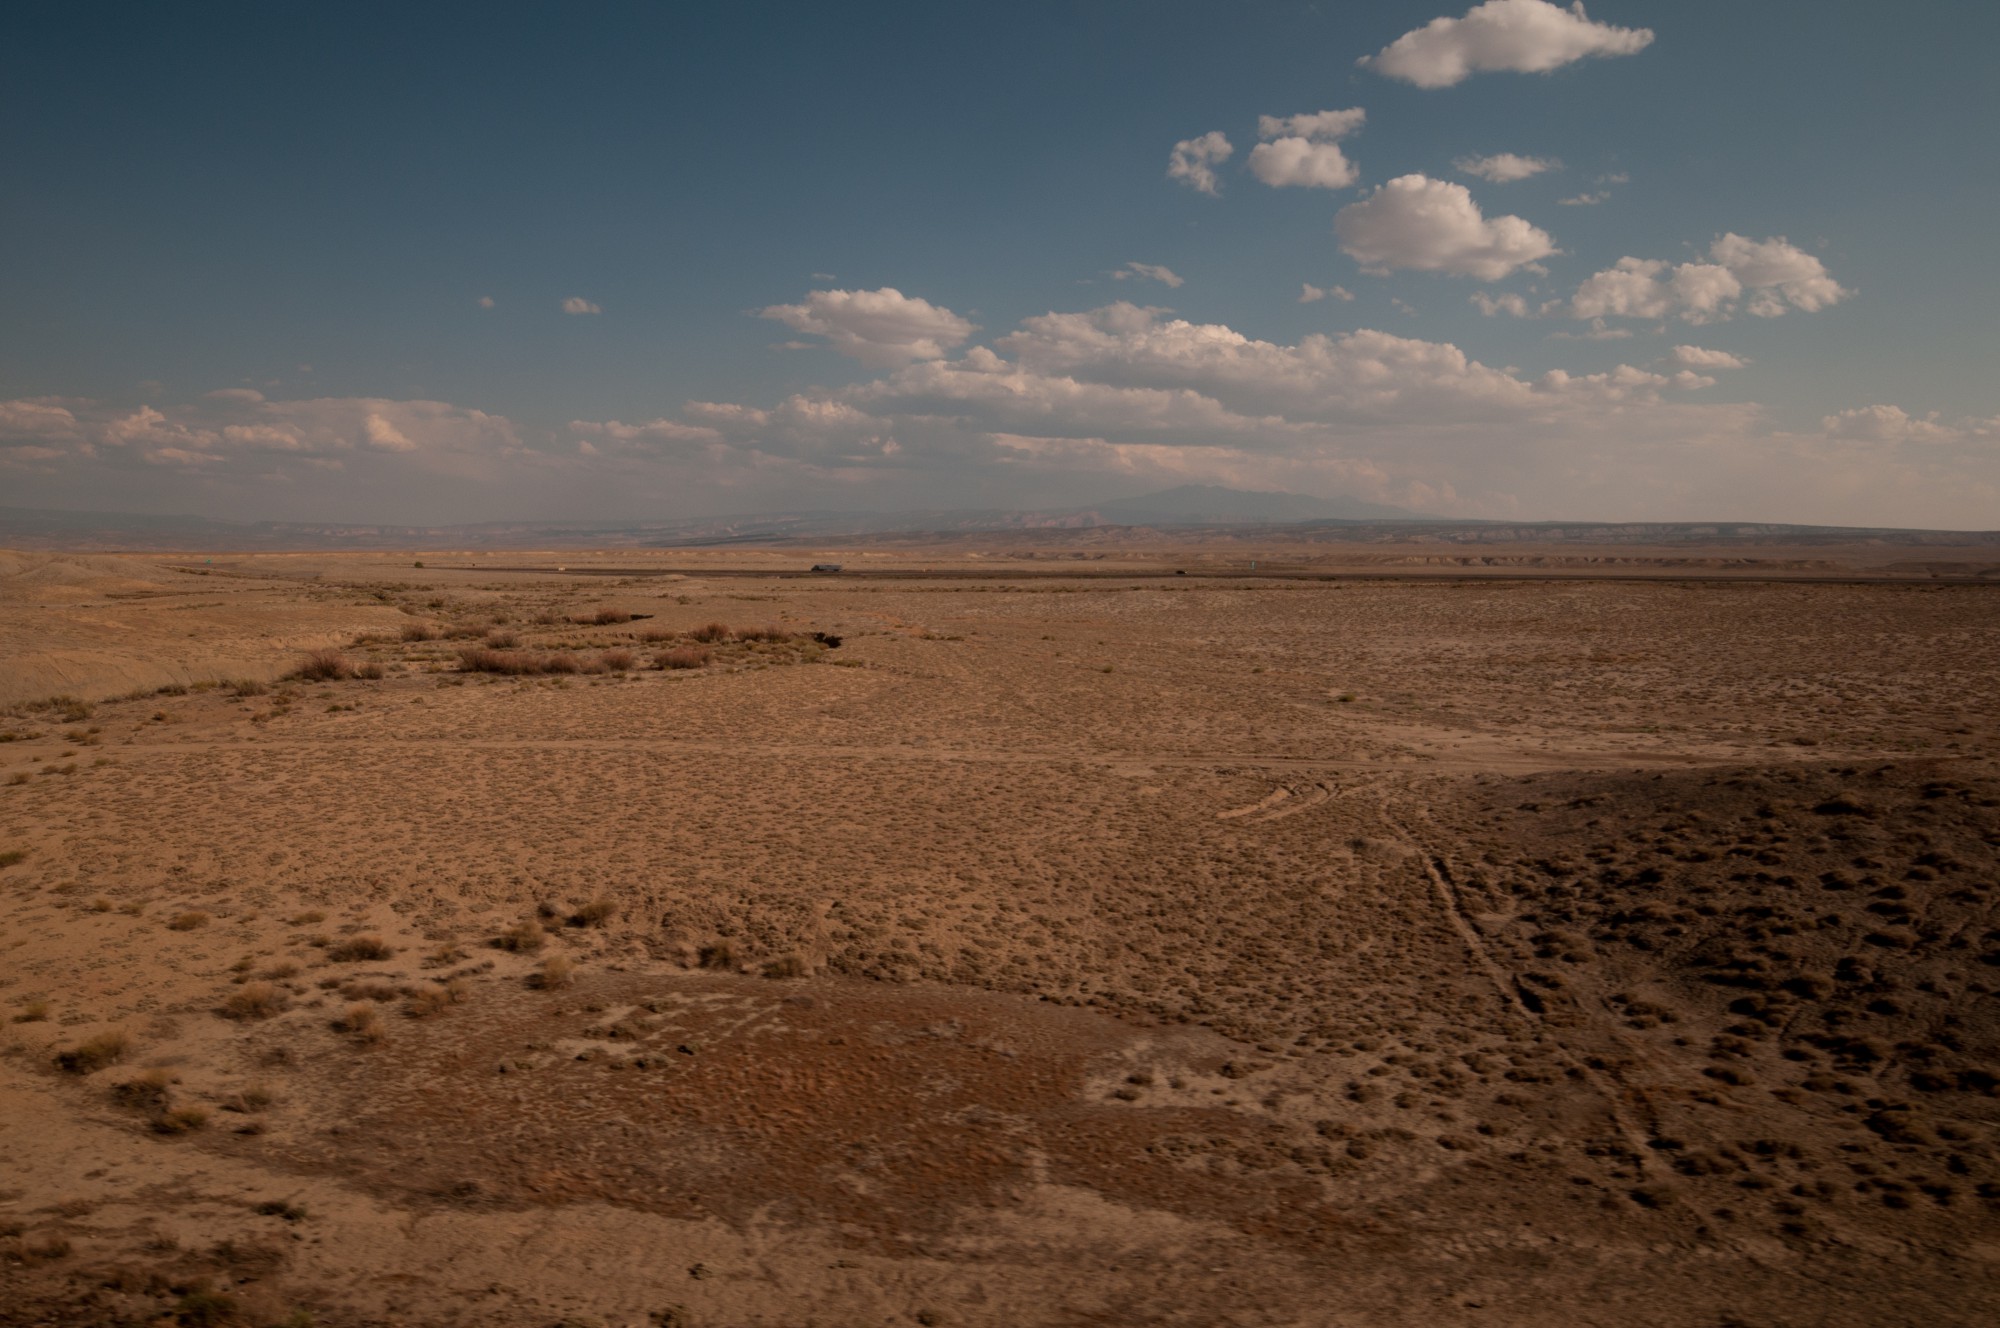 Plus de canyons, plus d'eau, le désert devient plat et extrêmement aride. Il ne me reste plus que quelques minutes de soleil pour absorber le paysage. 